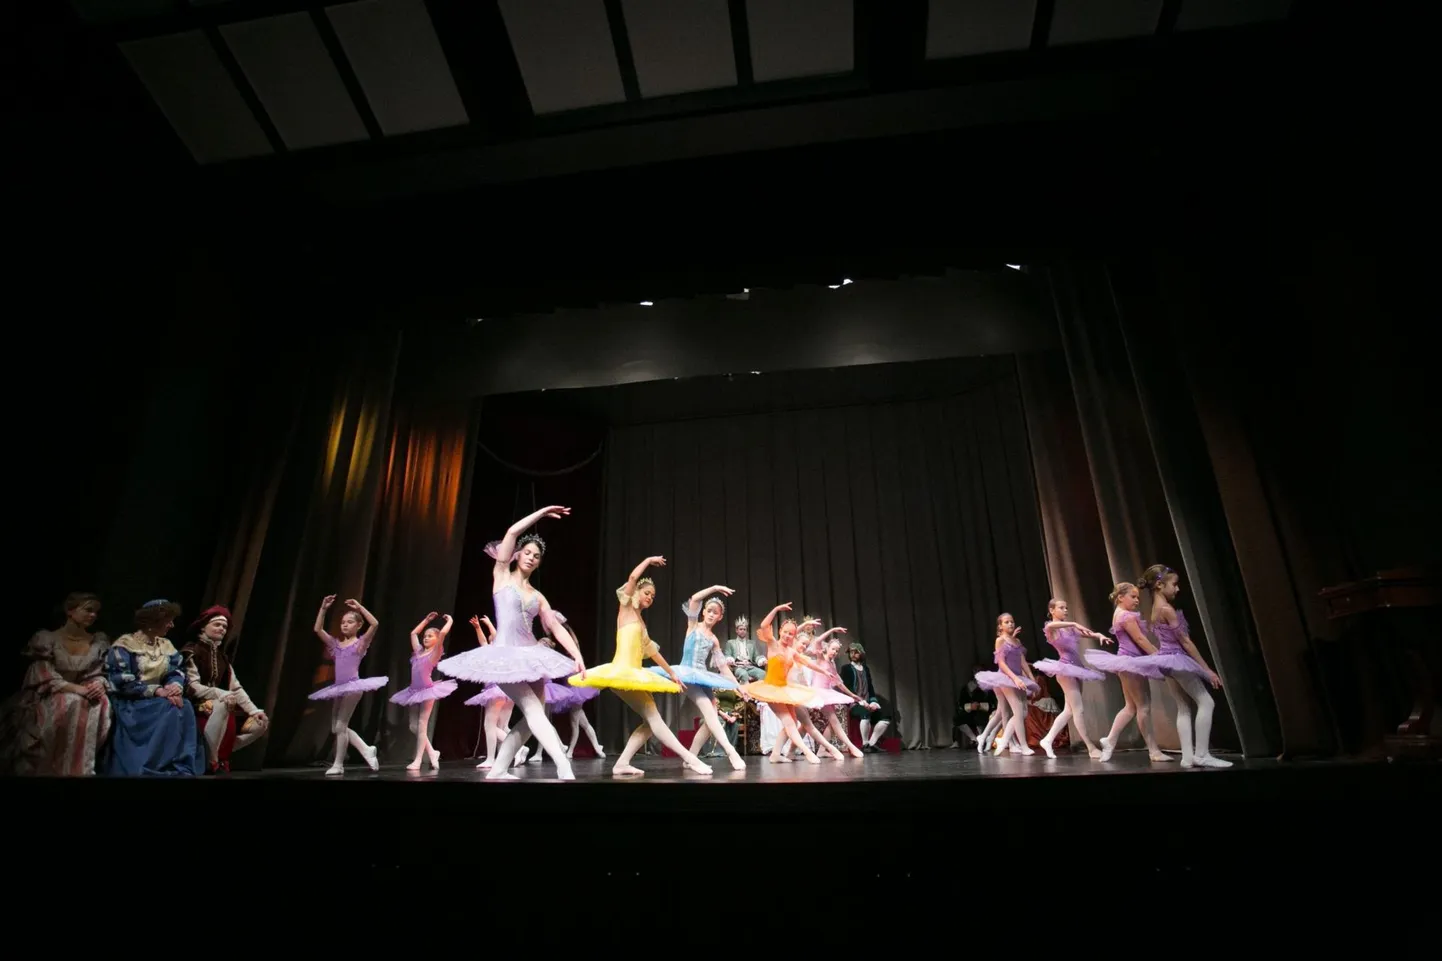 Balletivaatamisvõimalusi kultuurifestivalil jagub. Fotol on hetk Kaurikooli balletistuudio mõne aasta tagusest etendusest.